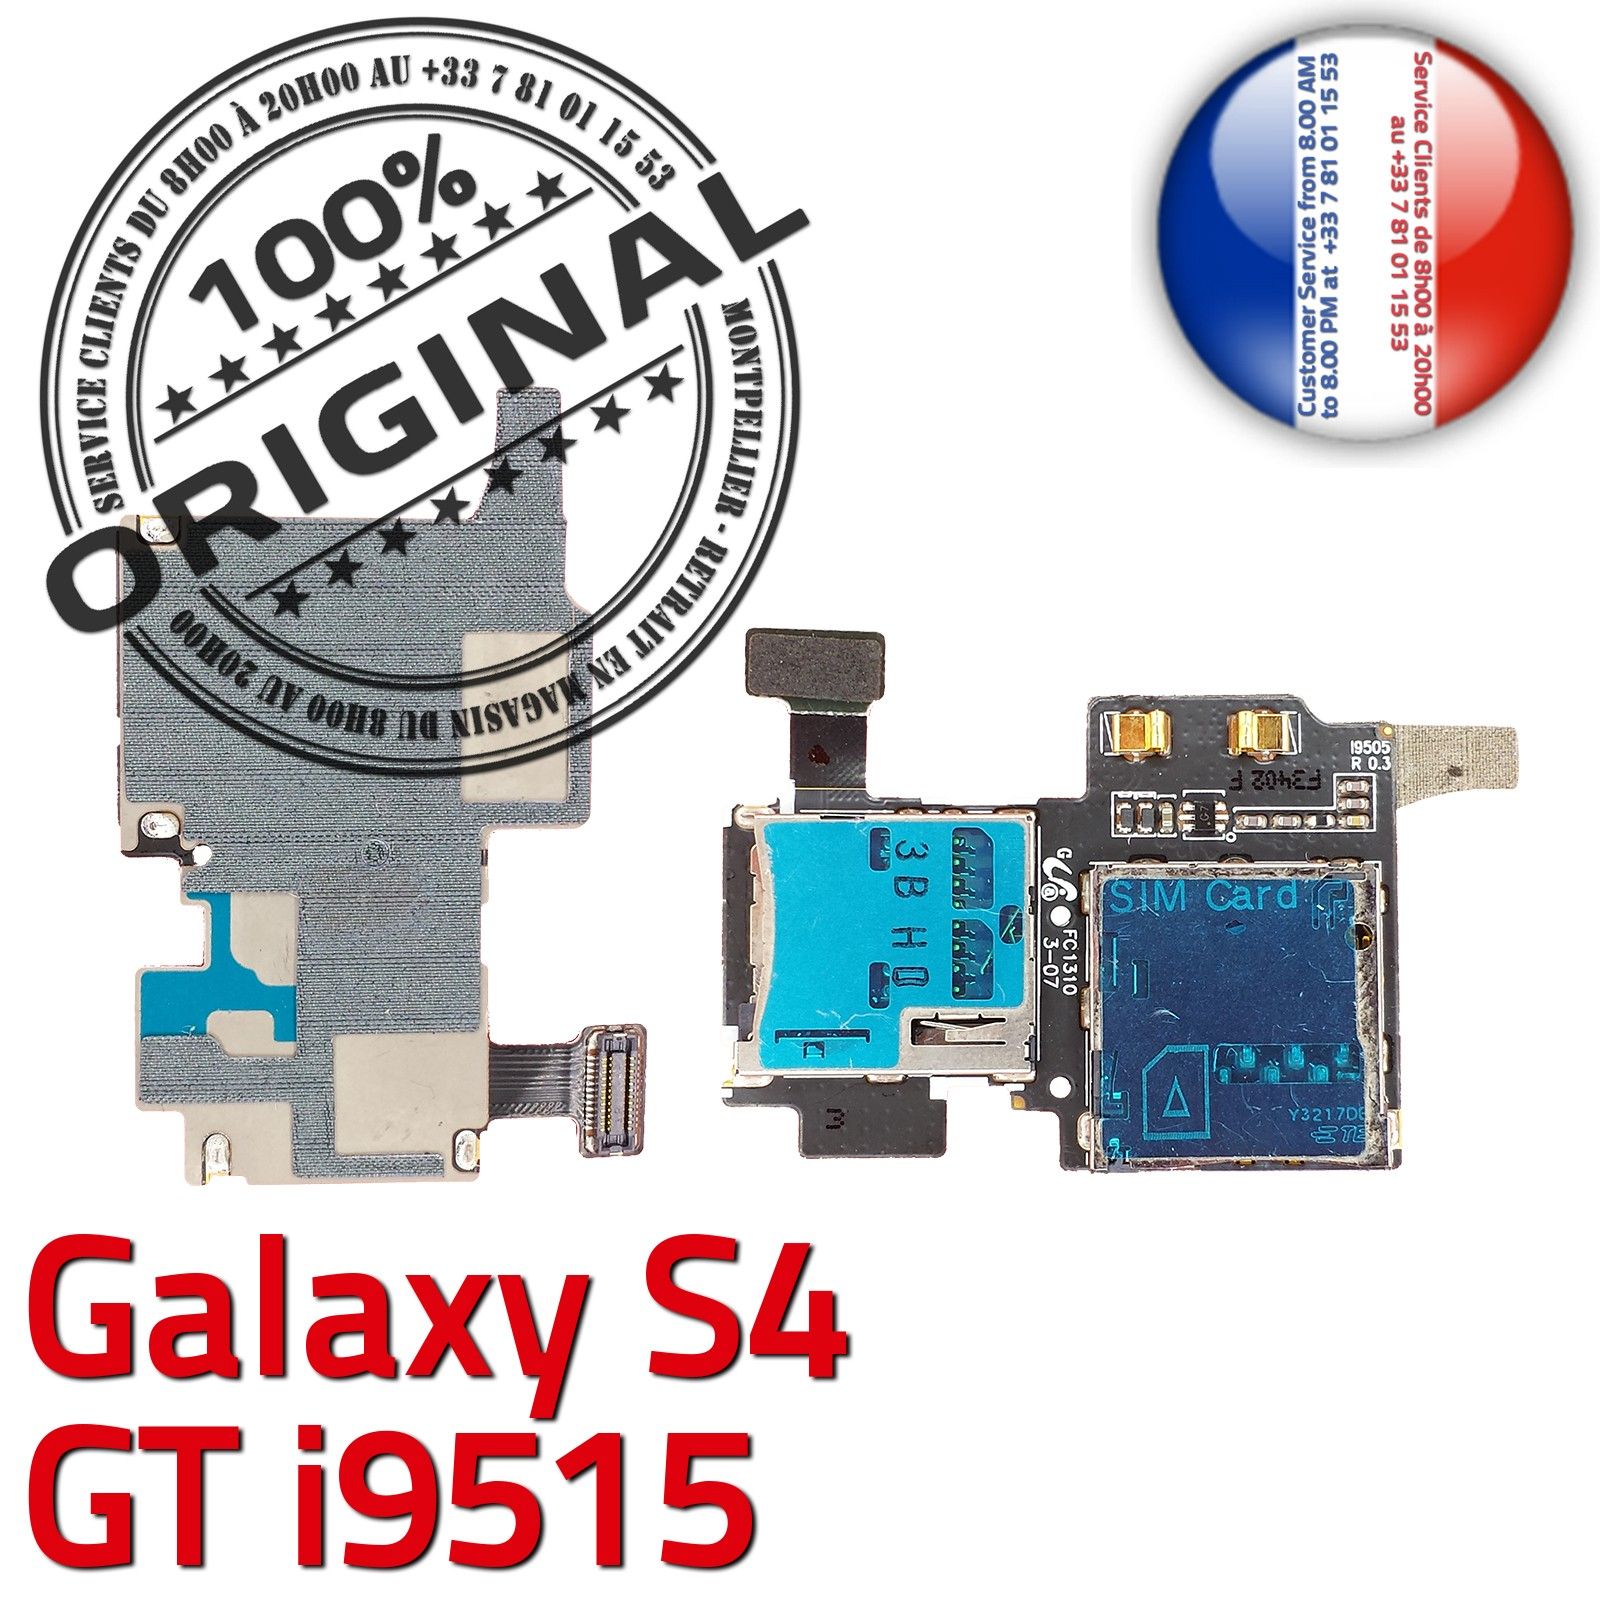 Comment Insérer / Retirer une carte mémoire microSD dans mon Samsung Galaxy  Note 8 ?